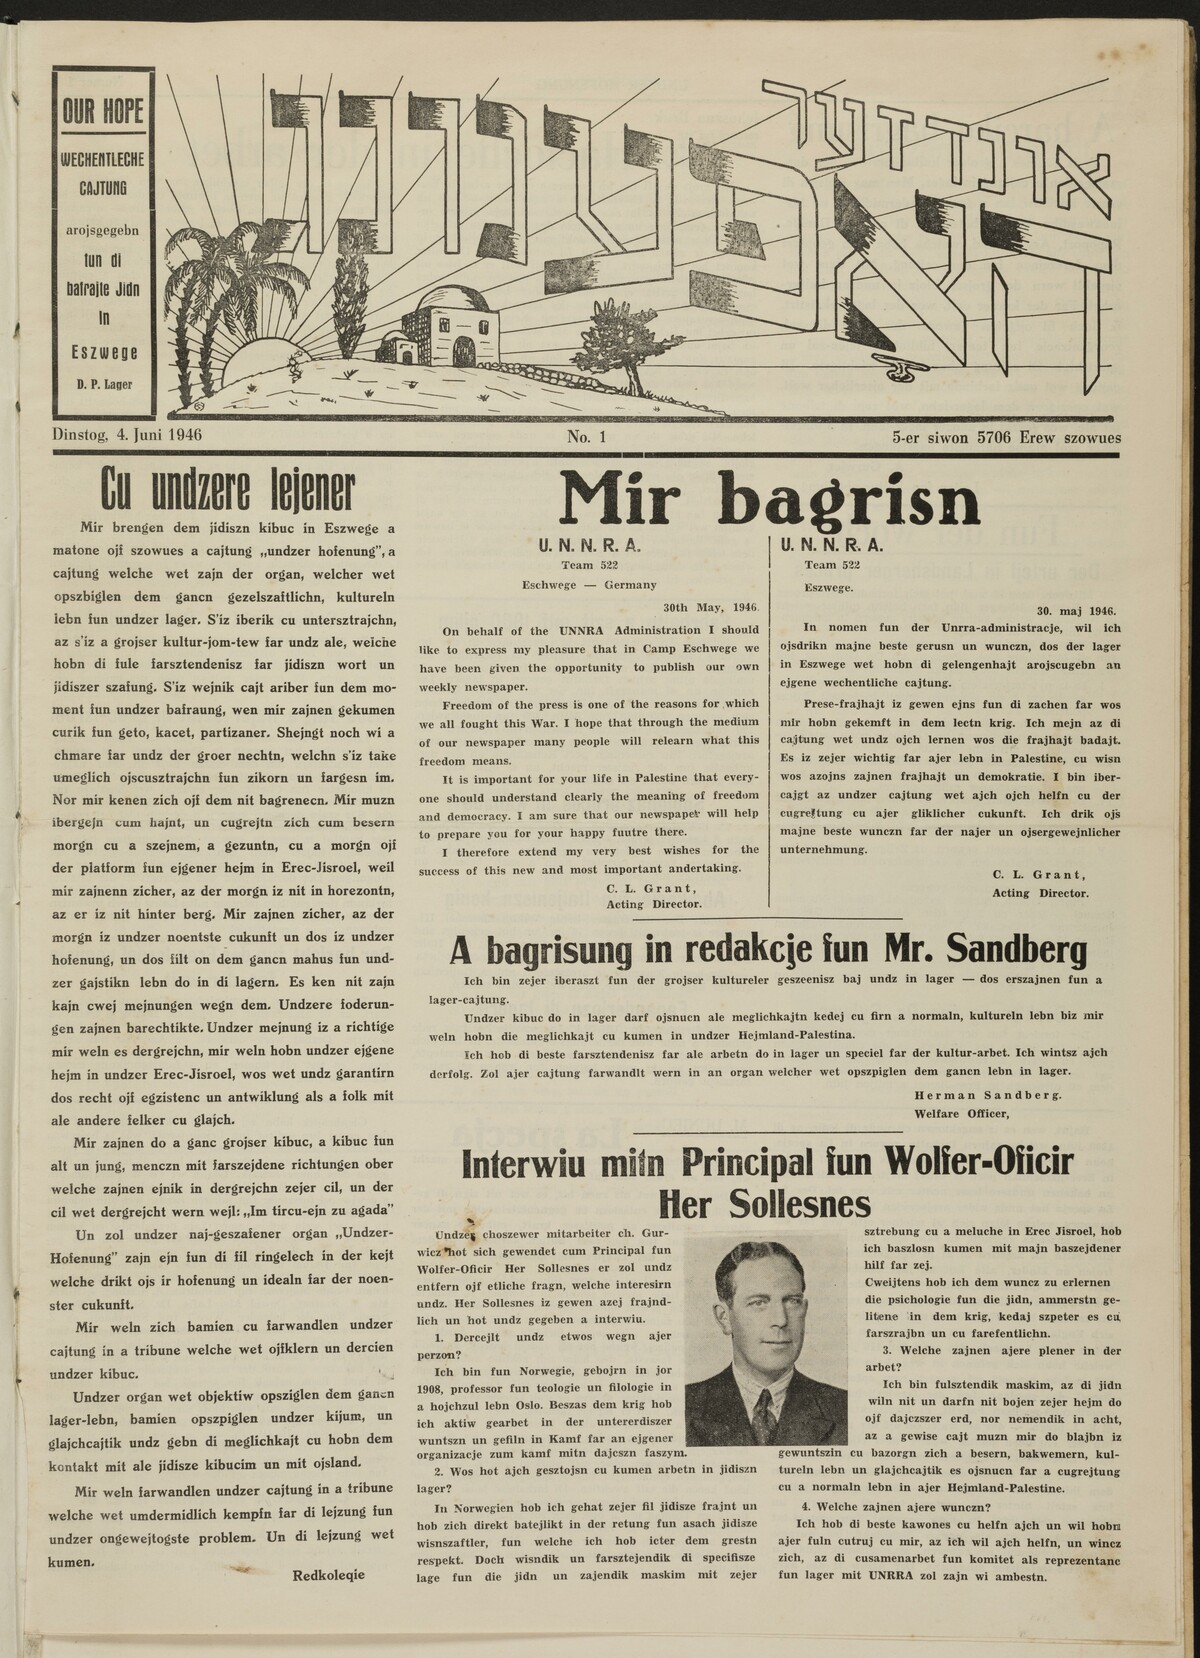 Zeitung der Displaced Persons, Undzer Hofenung, Eschwege